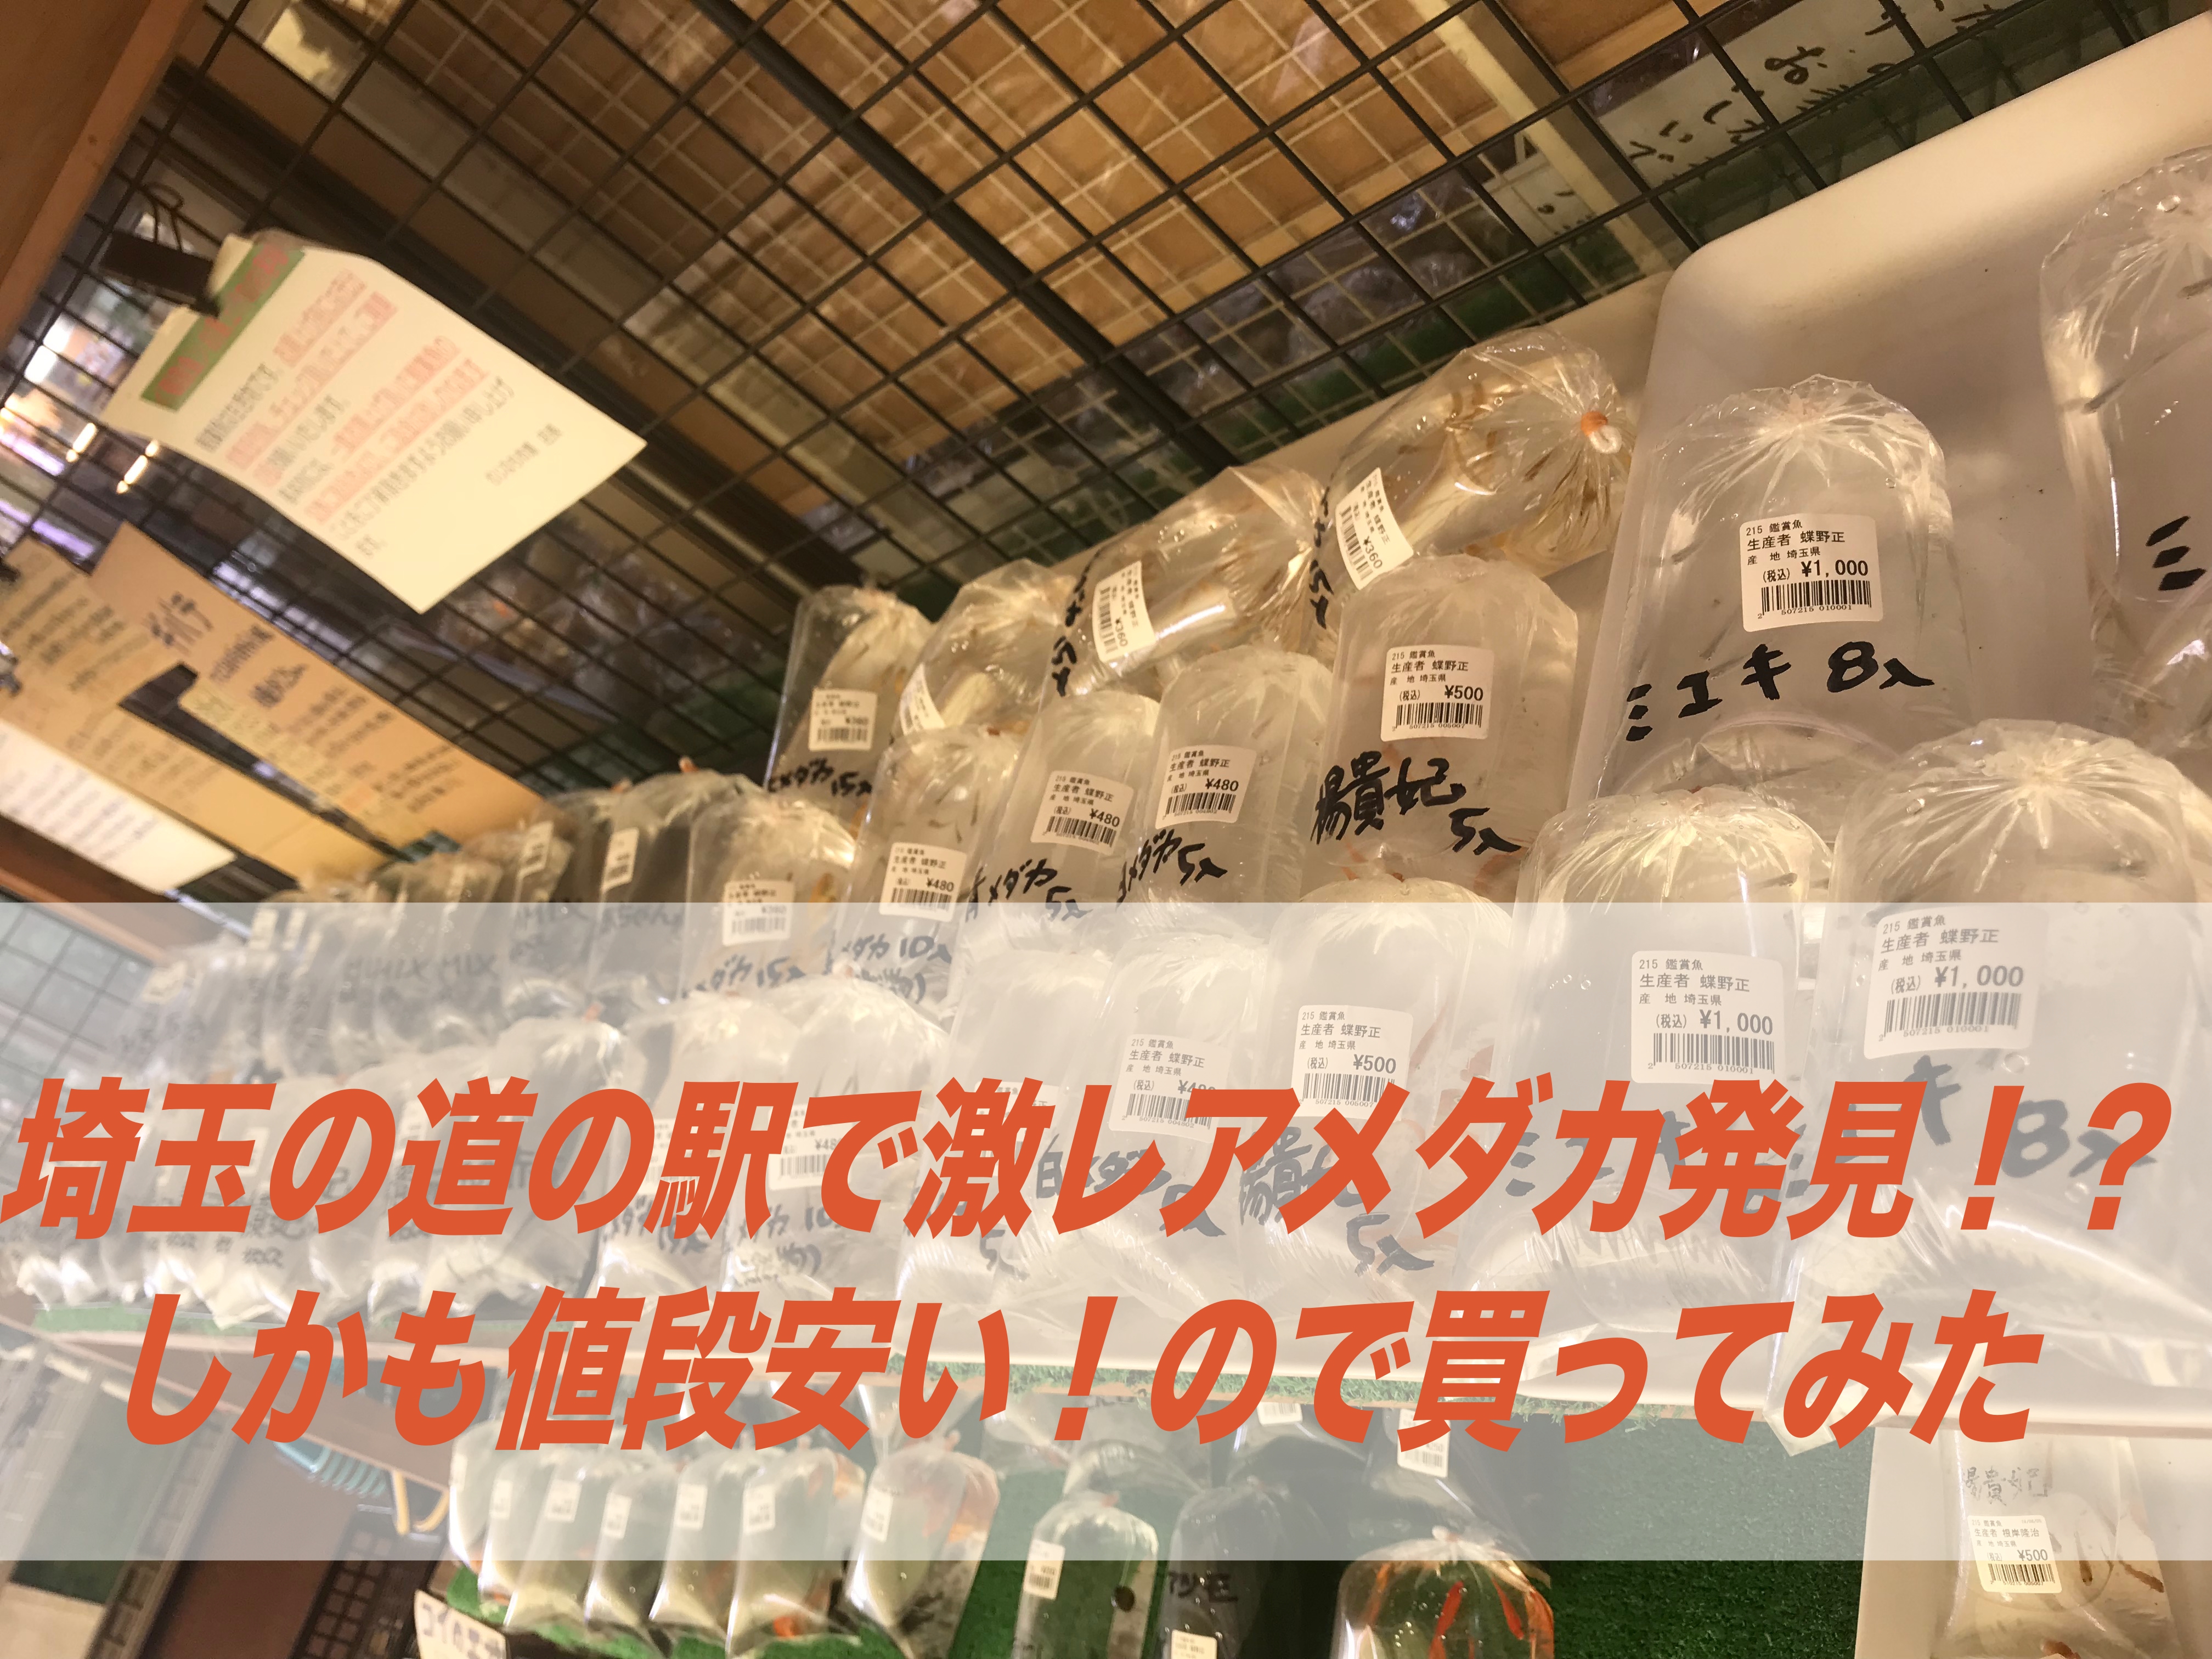 道の駅 メダカ 埼玉の道の駅で激レアメダカ発見 しかも値段安い 買ってみた 羽生 しょーとかっとブログ